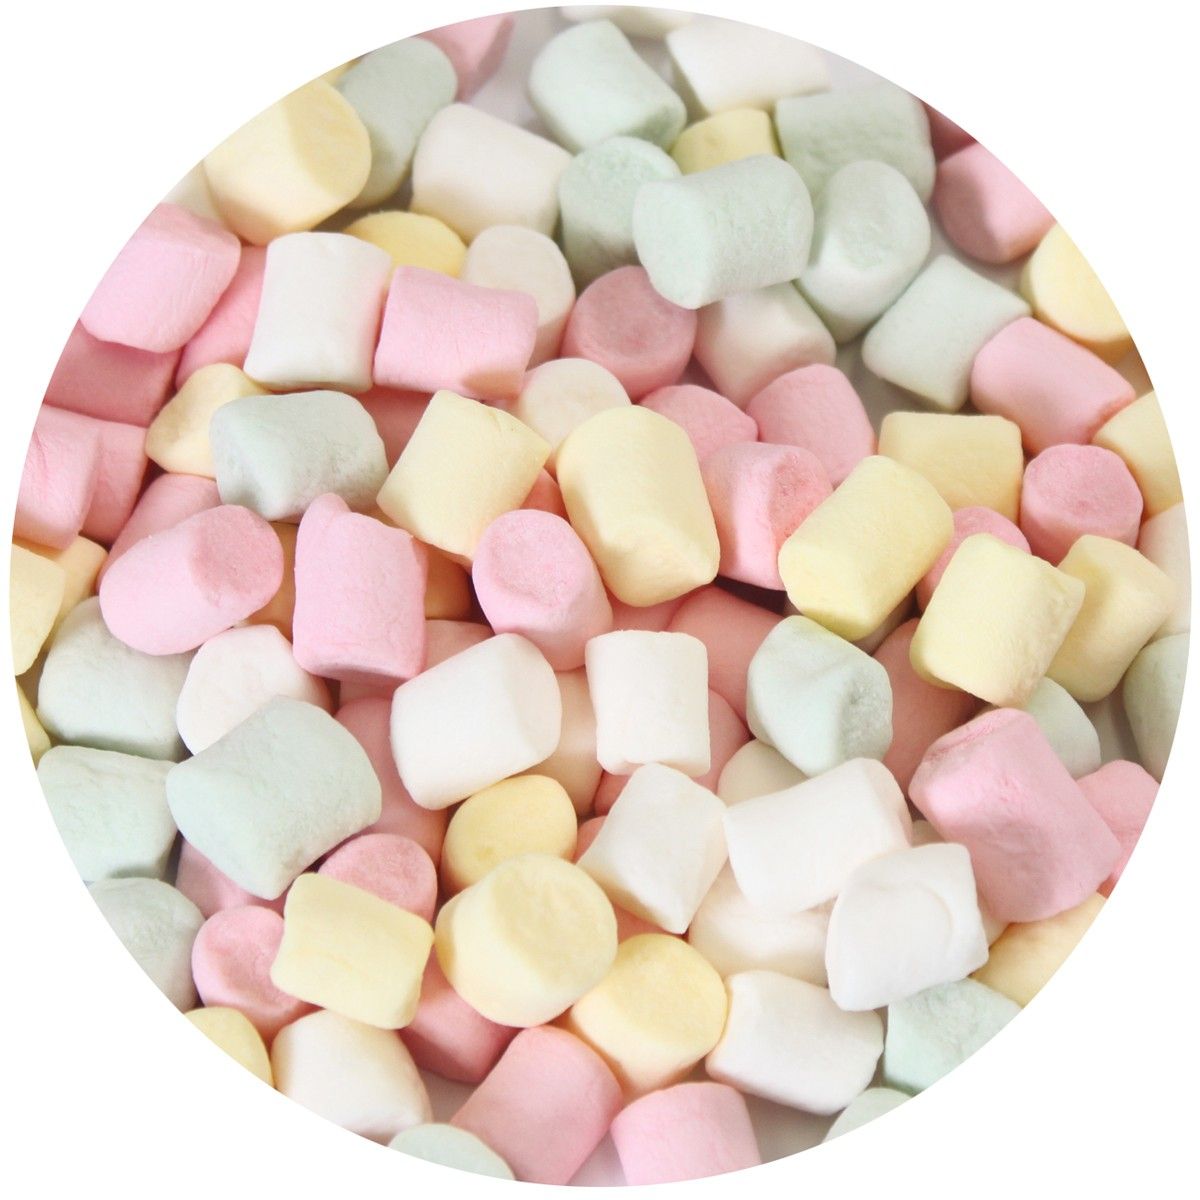 Mini marshmallows - 50 g